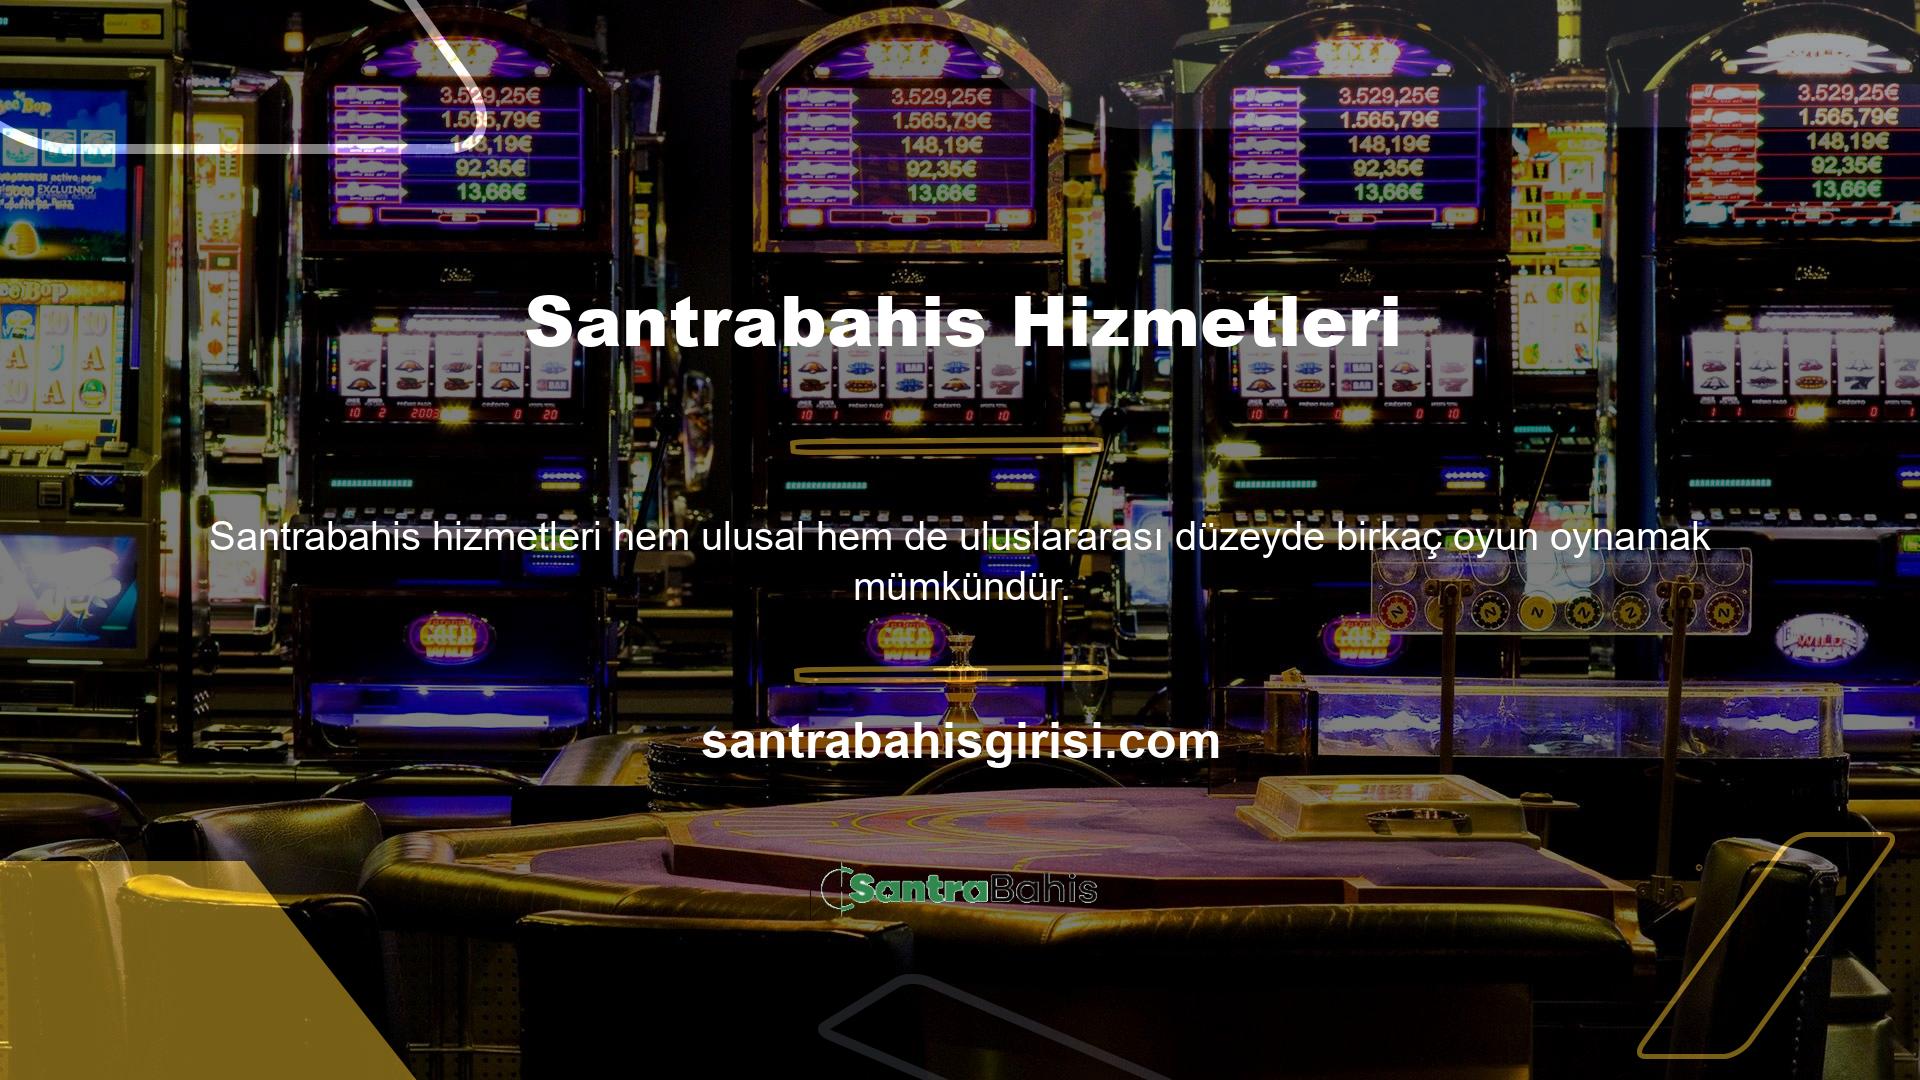 İlk kez bir çevrimiçi Casino sitesine yatırım yapmayı seçmek, heyecan verici oyunlar ve bonusların yanı sıra ek avantajlarla da sonuçlanabilir